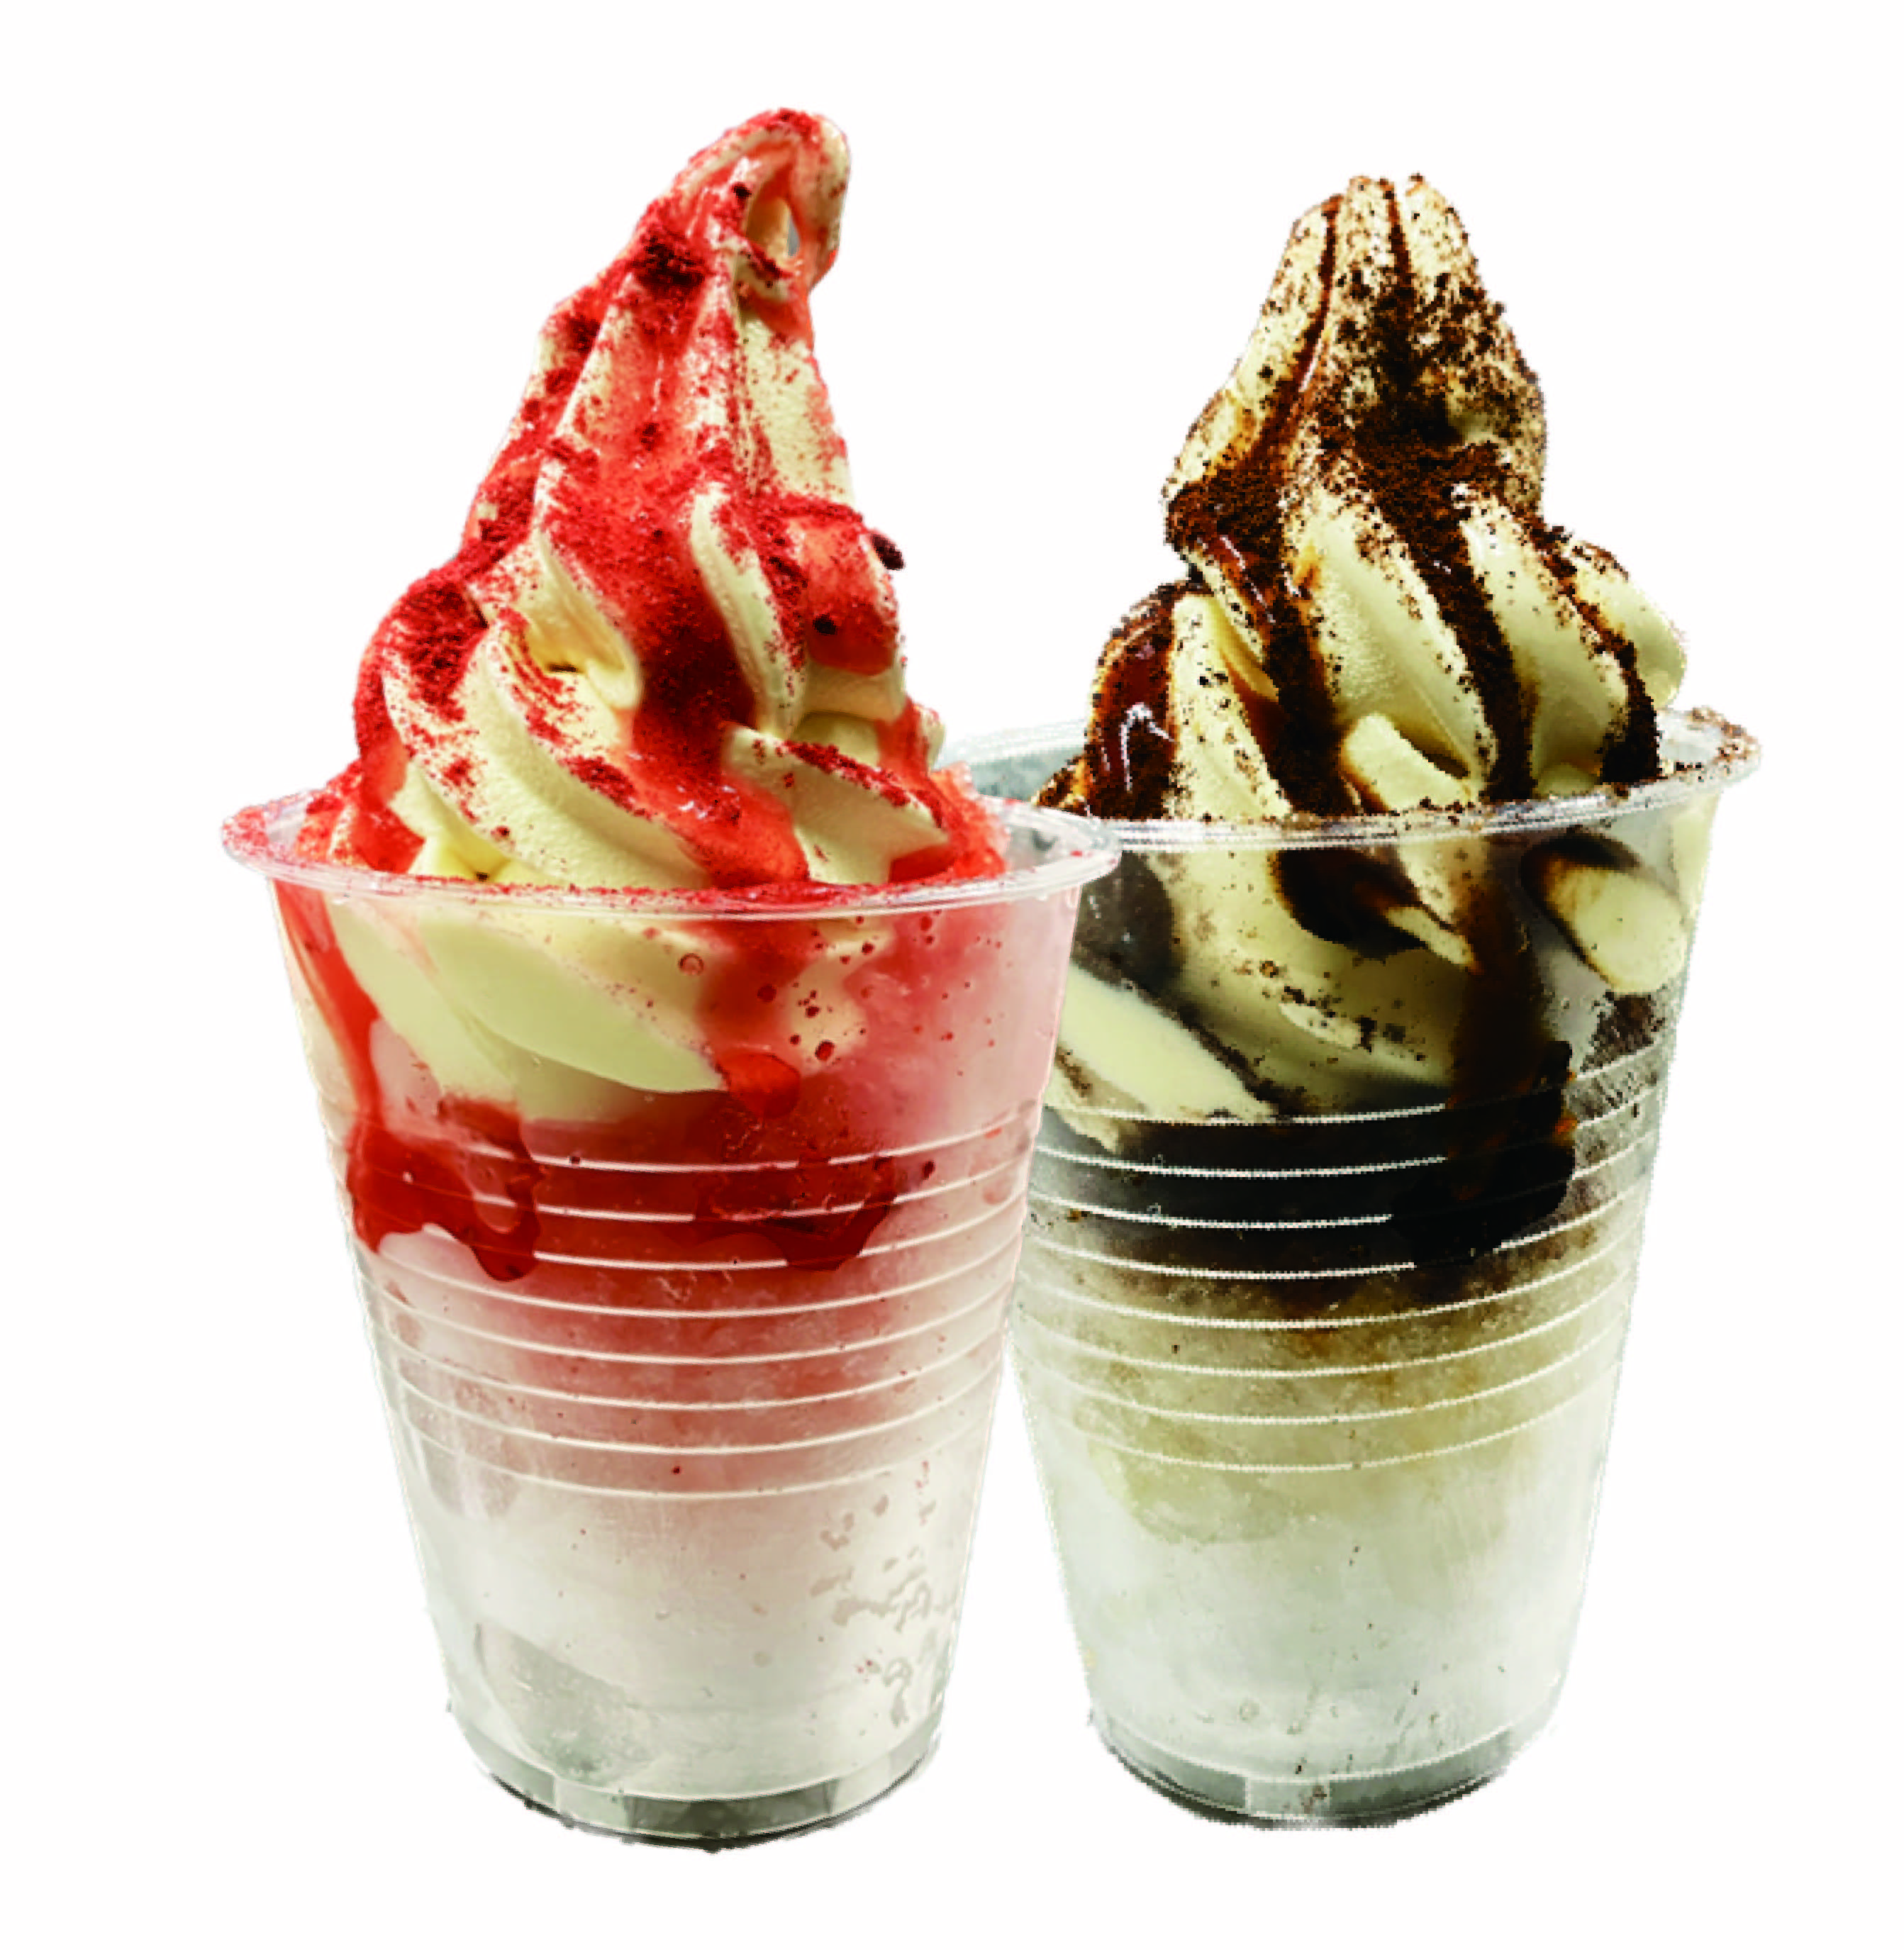 仙台のソフトクリーム専門のテイクアウトショップ
「ナポリの青」が“氷フロート”の販売を開始！